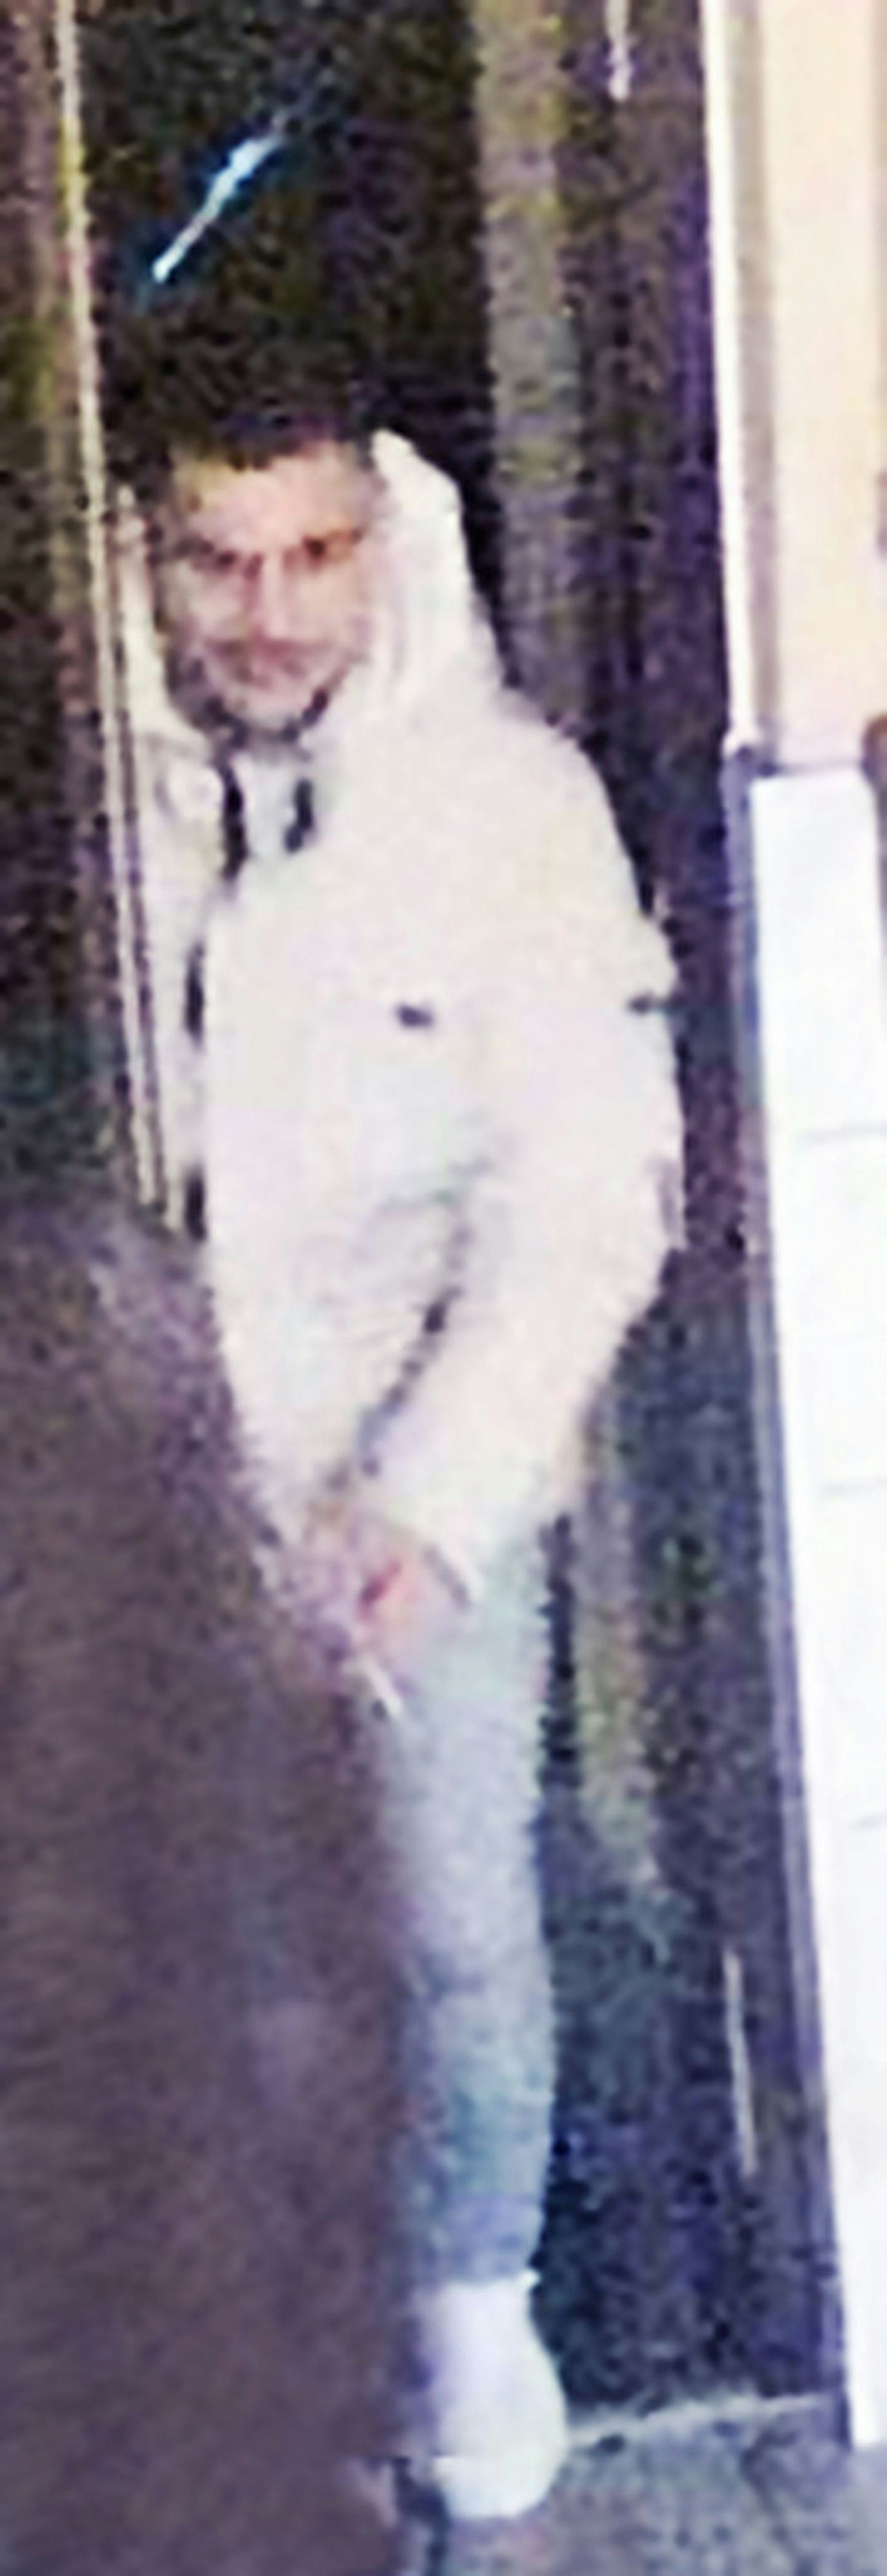 Ganzkörperfoto eines Mannes in heller Kleidung, er wird von der Polizei gesucht.